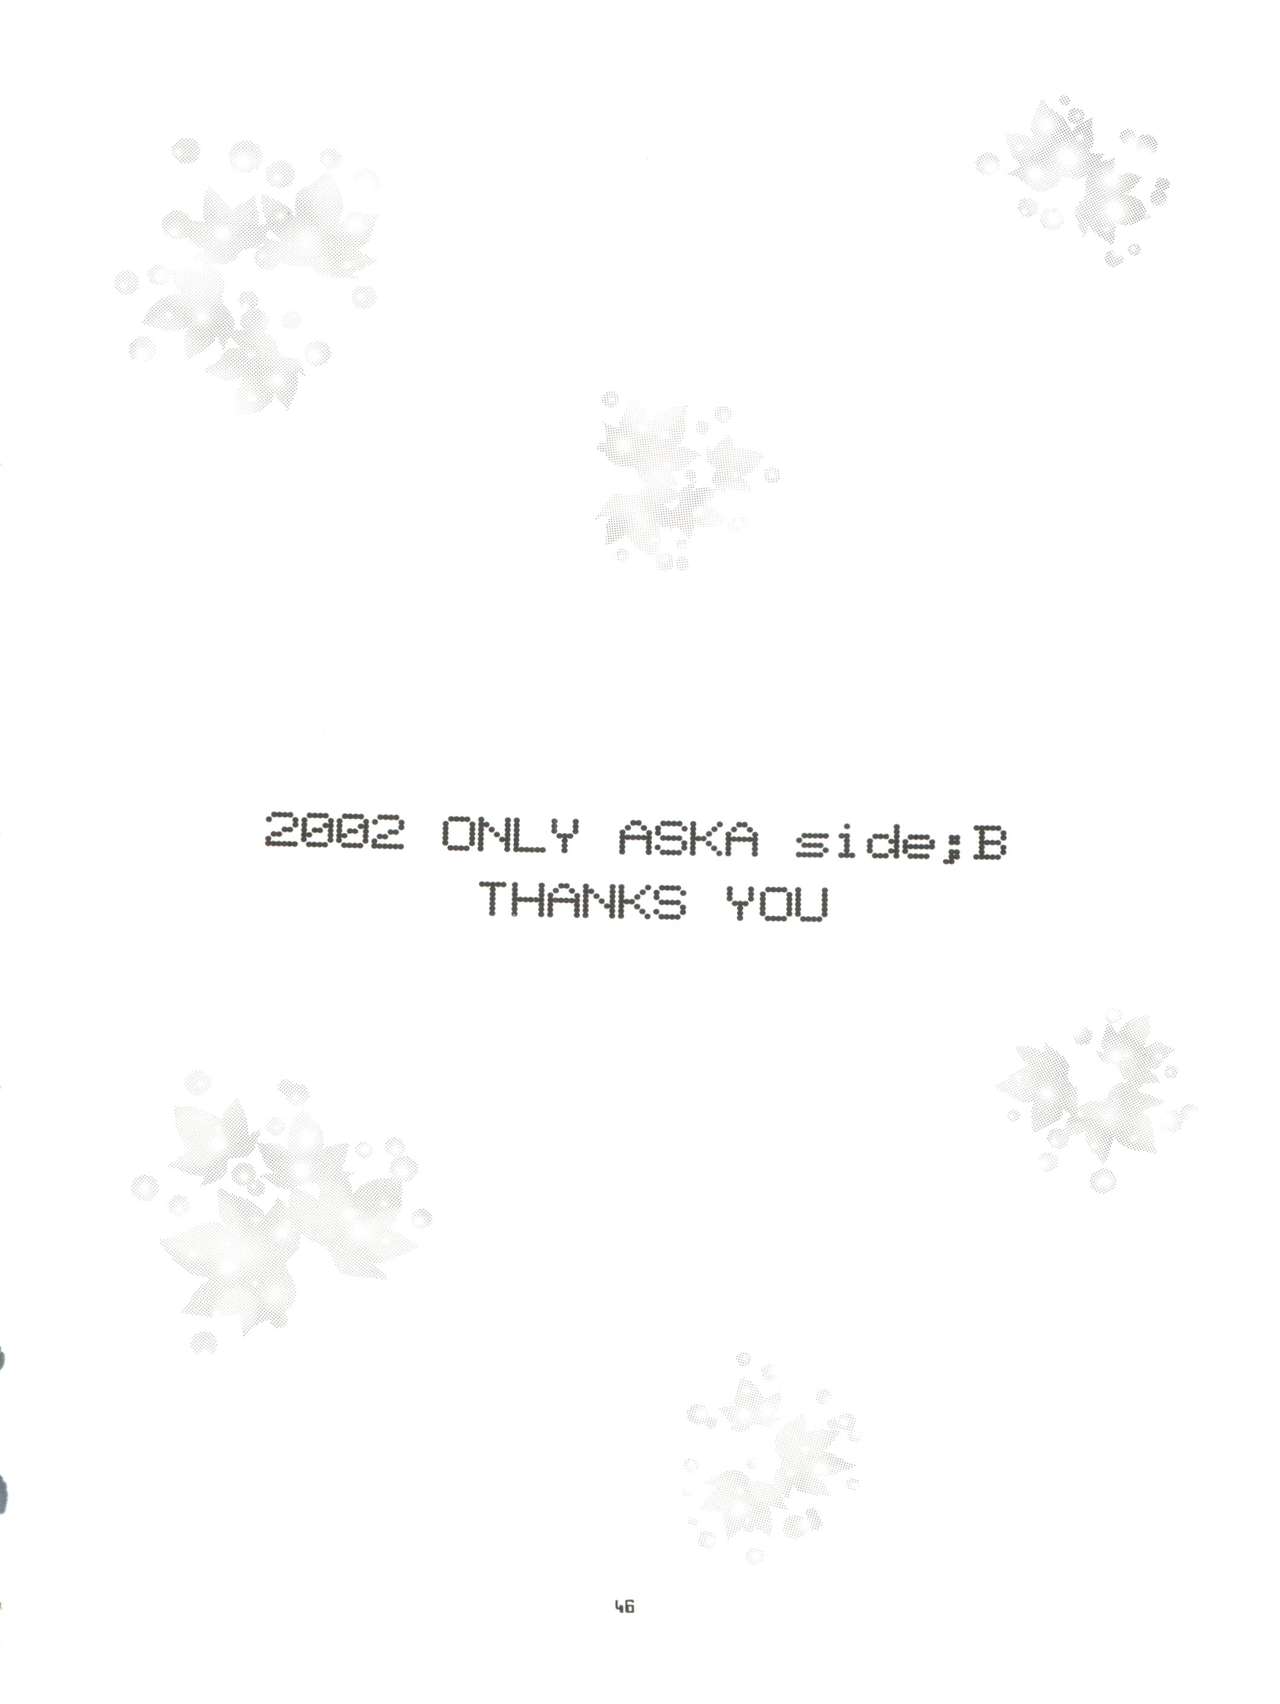 (C63) [血祭屋本舗 (朝凪葵)] 2002 ONLY ASKA side B (新世紀エヴァンゲリオン)